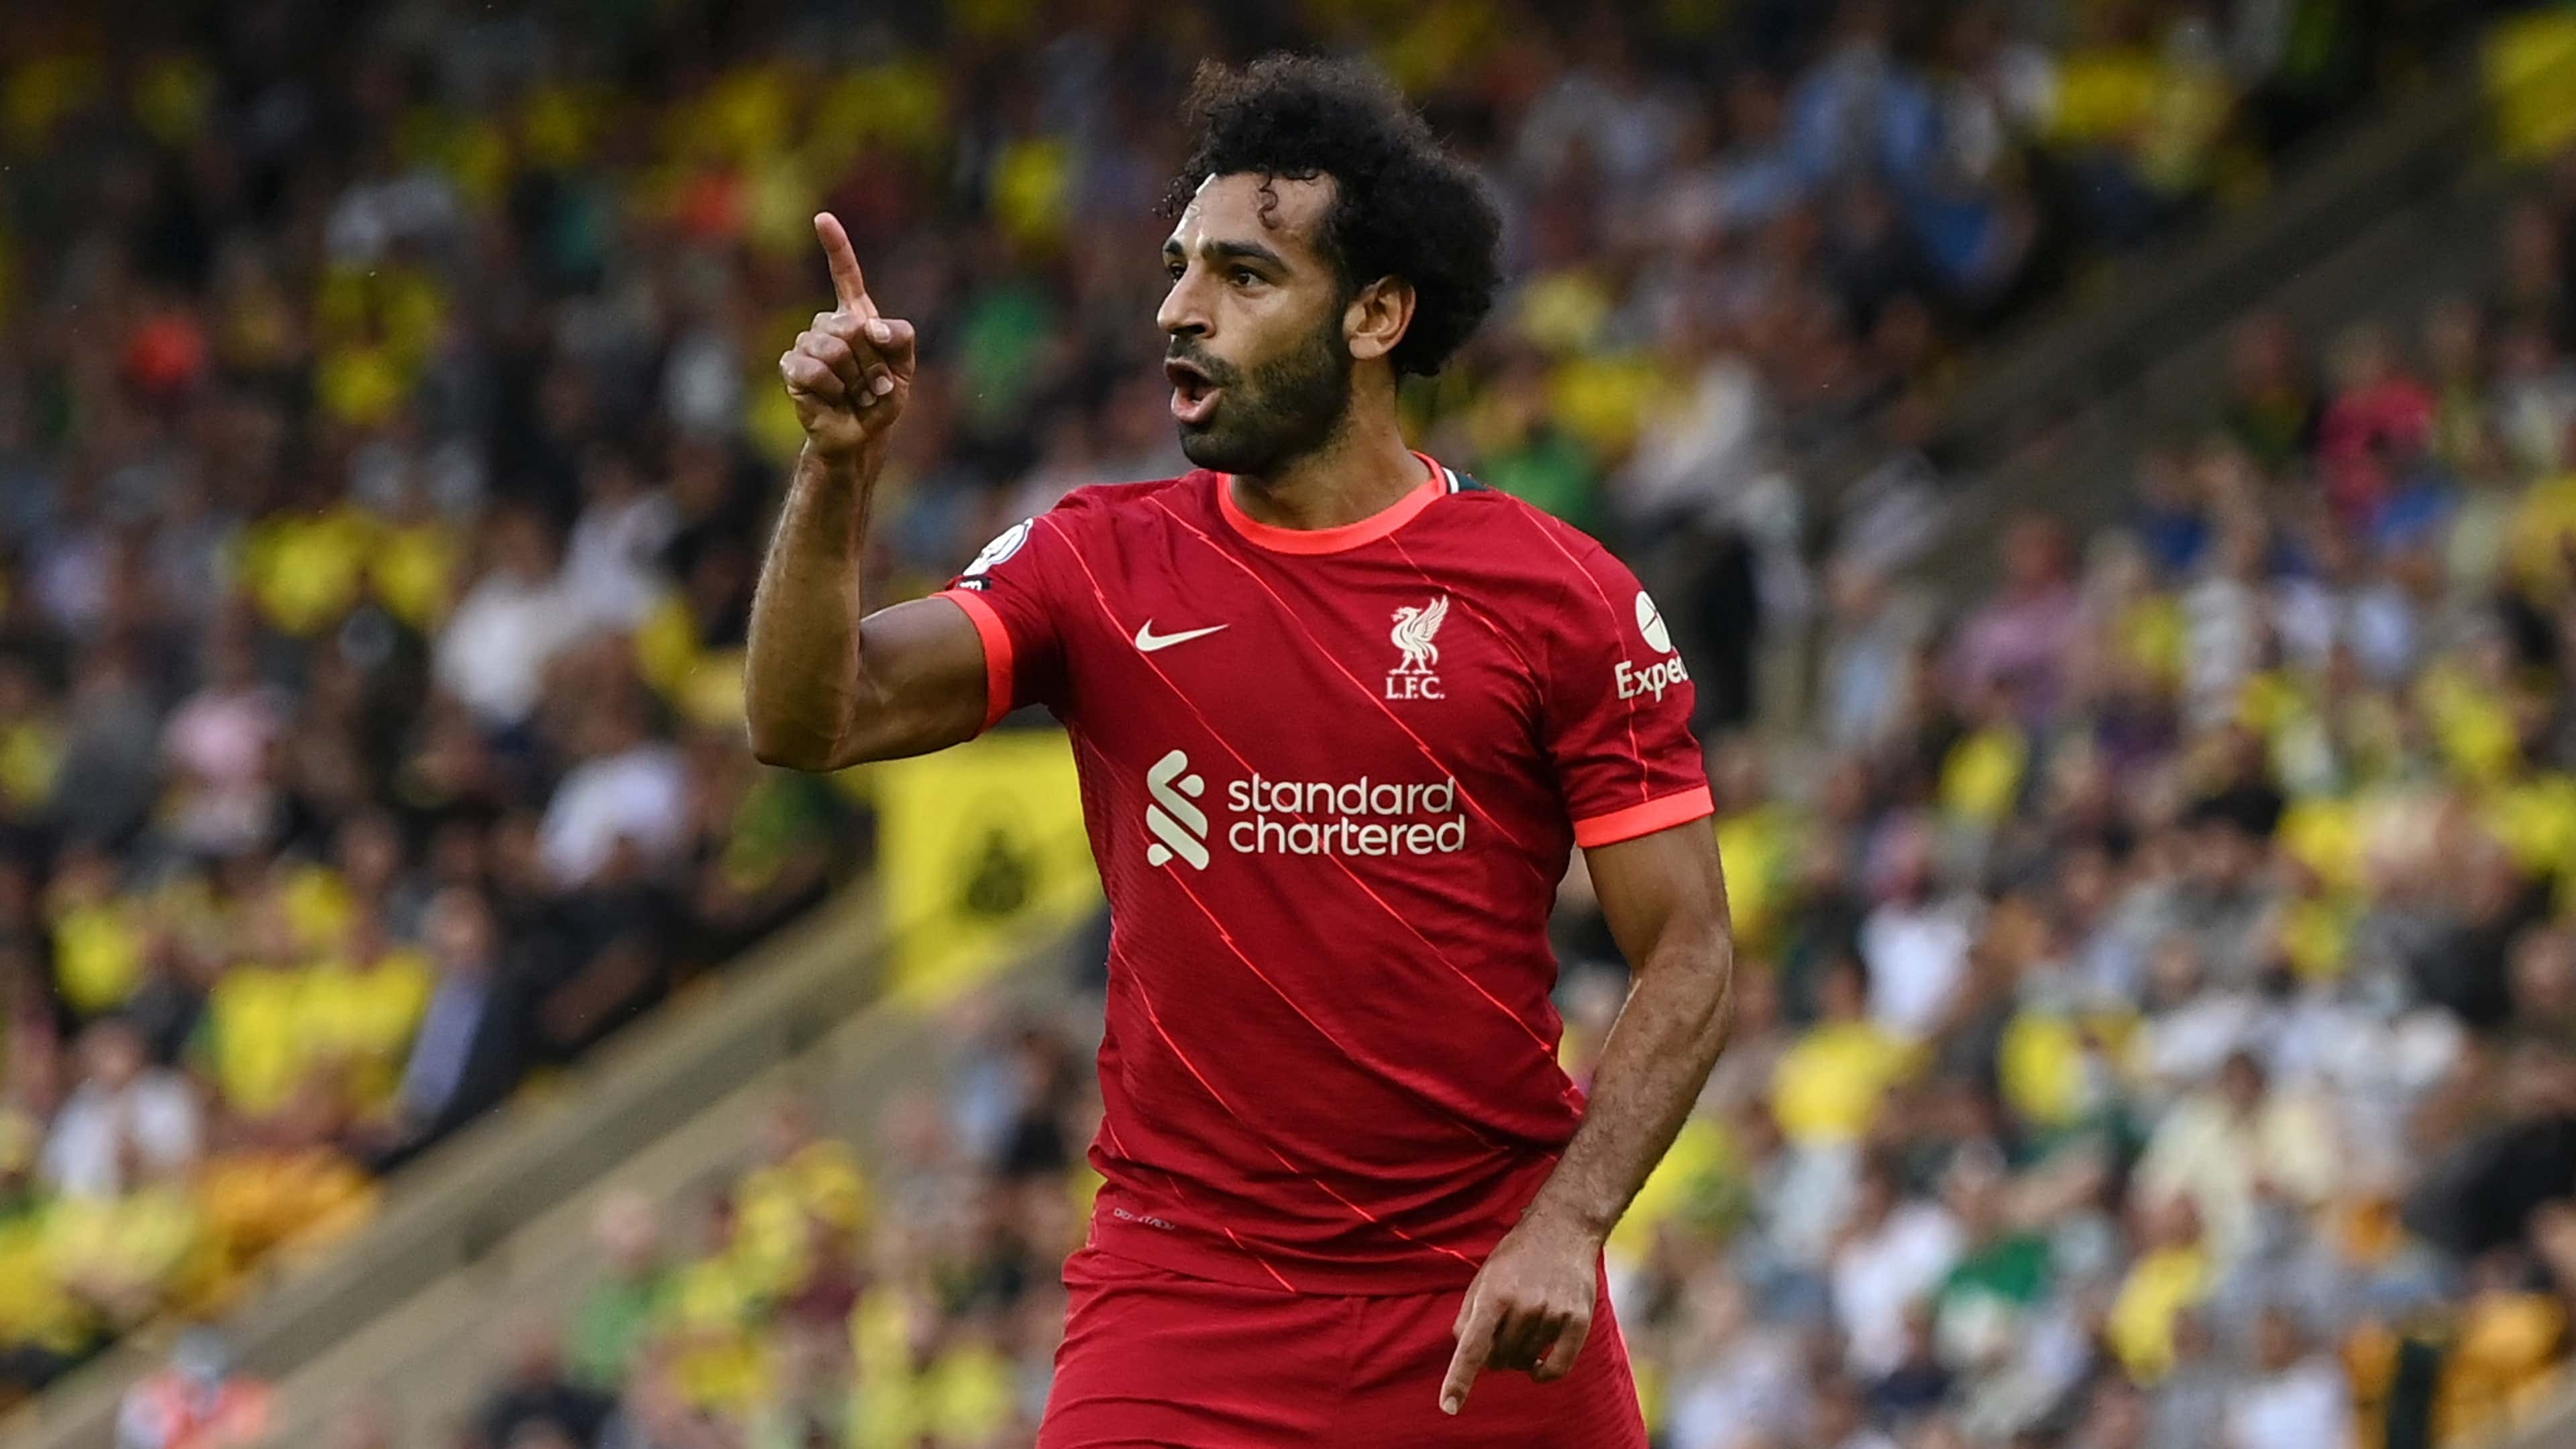 Salah pode deixar o Liverpool e se tornar o jogador mais bem pago do mundo